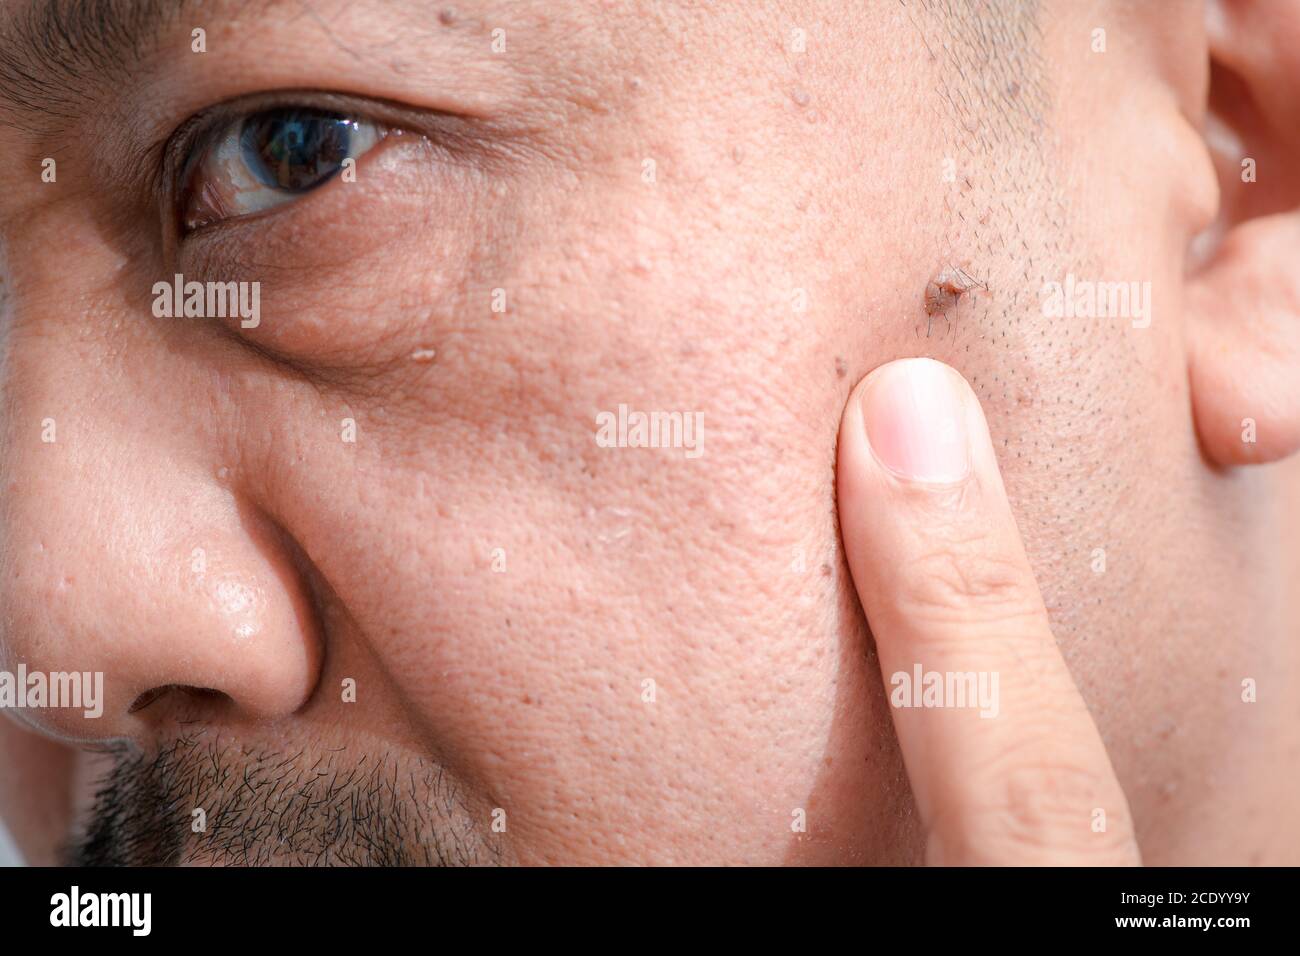 Fermé de grandes étiquettes de peau ou Acrochordon sur le visage de l'homme asiatique d'âge moyen, concept de soins de santé Banque D'Images